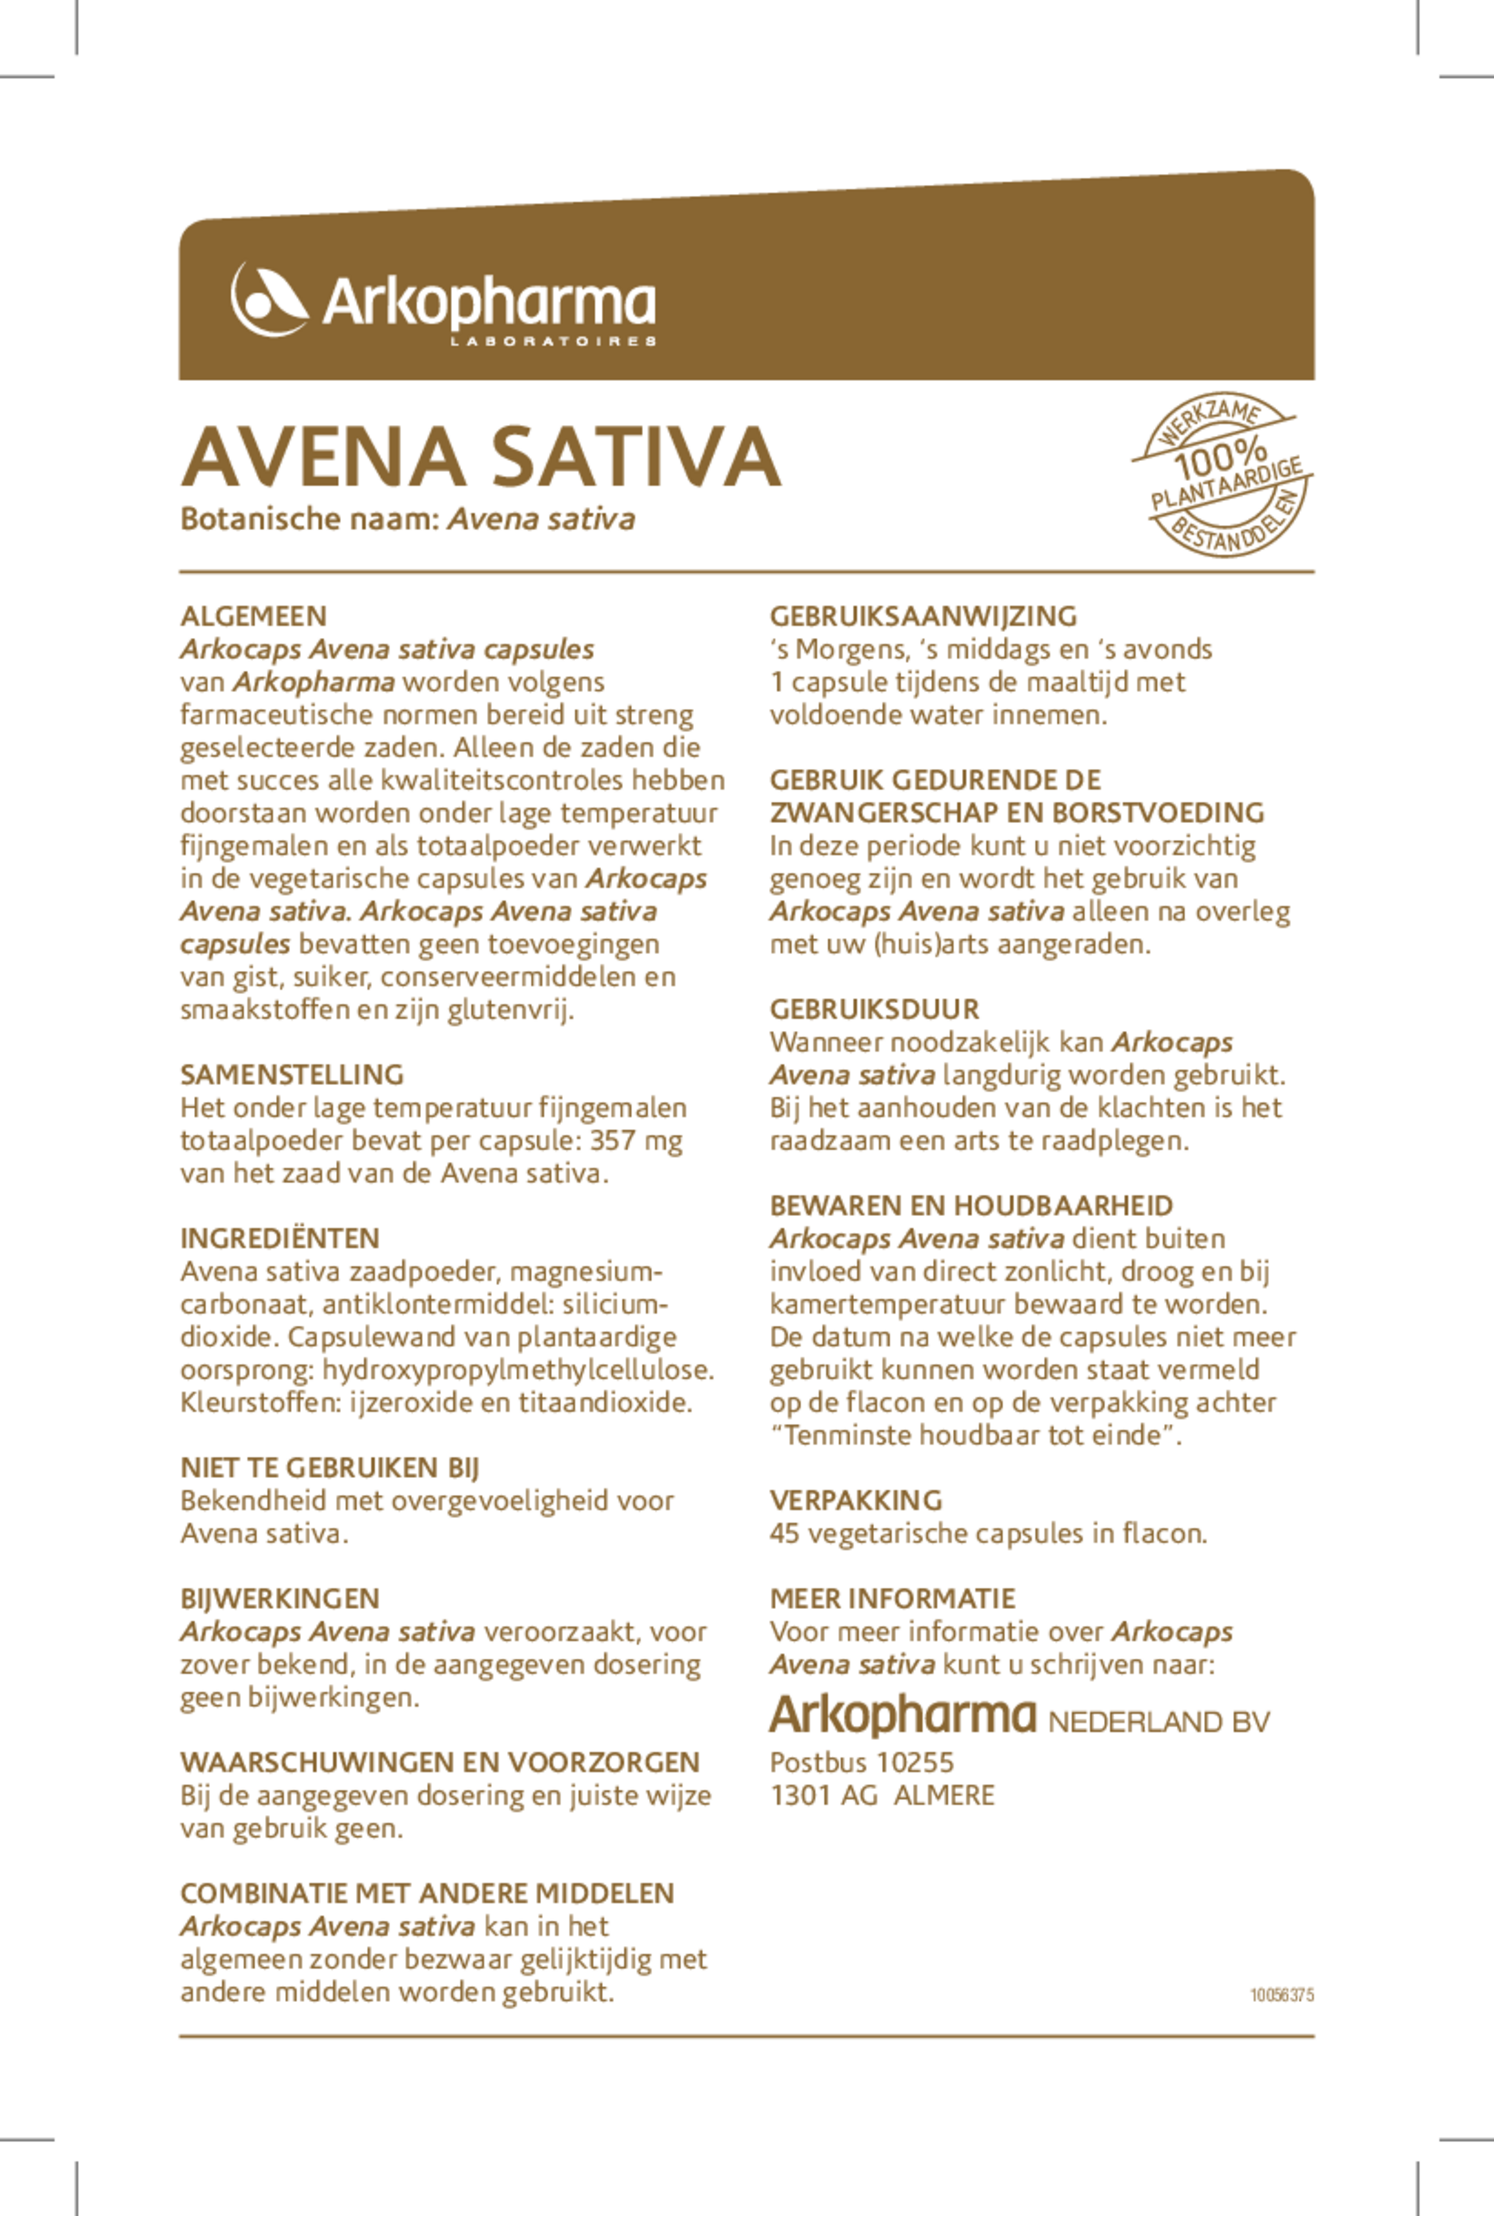 Avena Sativa Capsules afbeelding van document #1, gebruiksaanwijzing